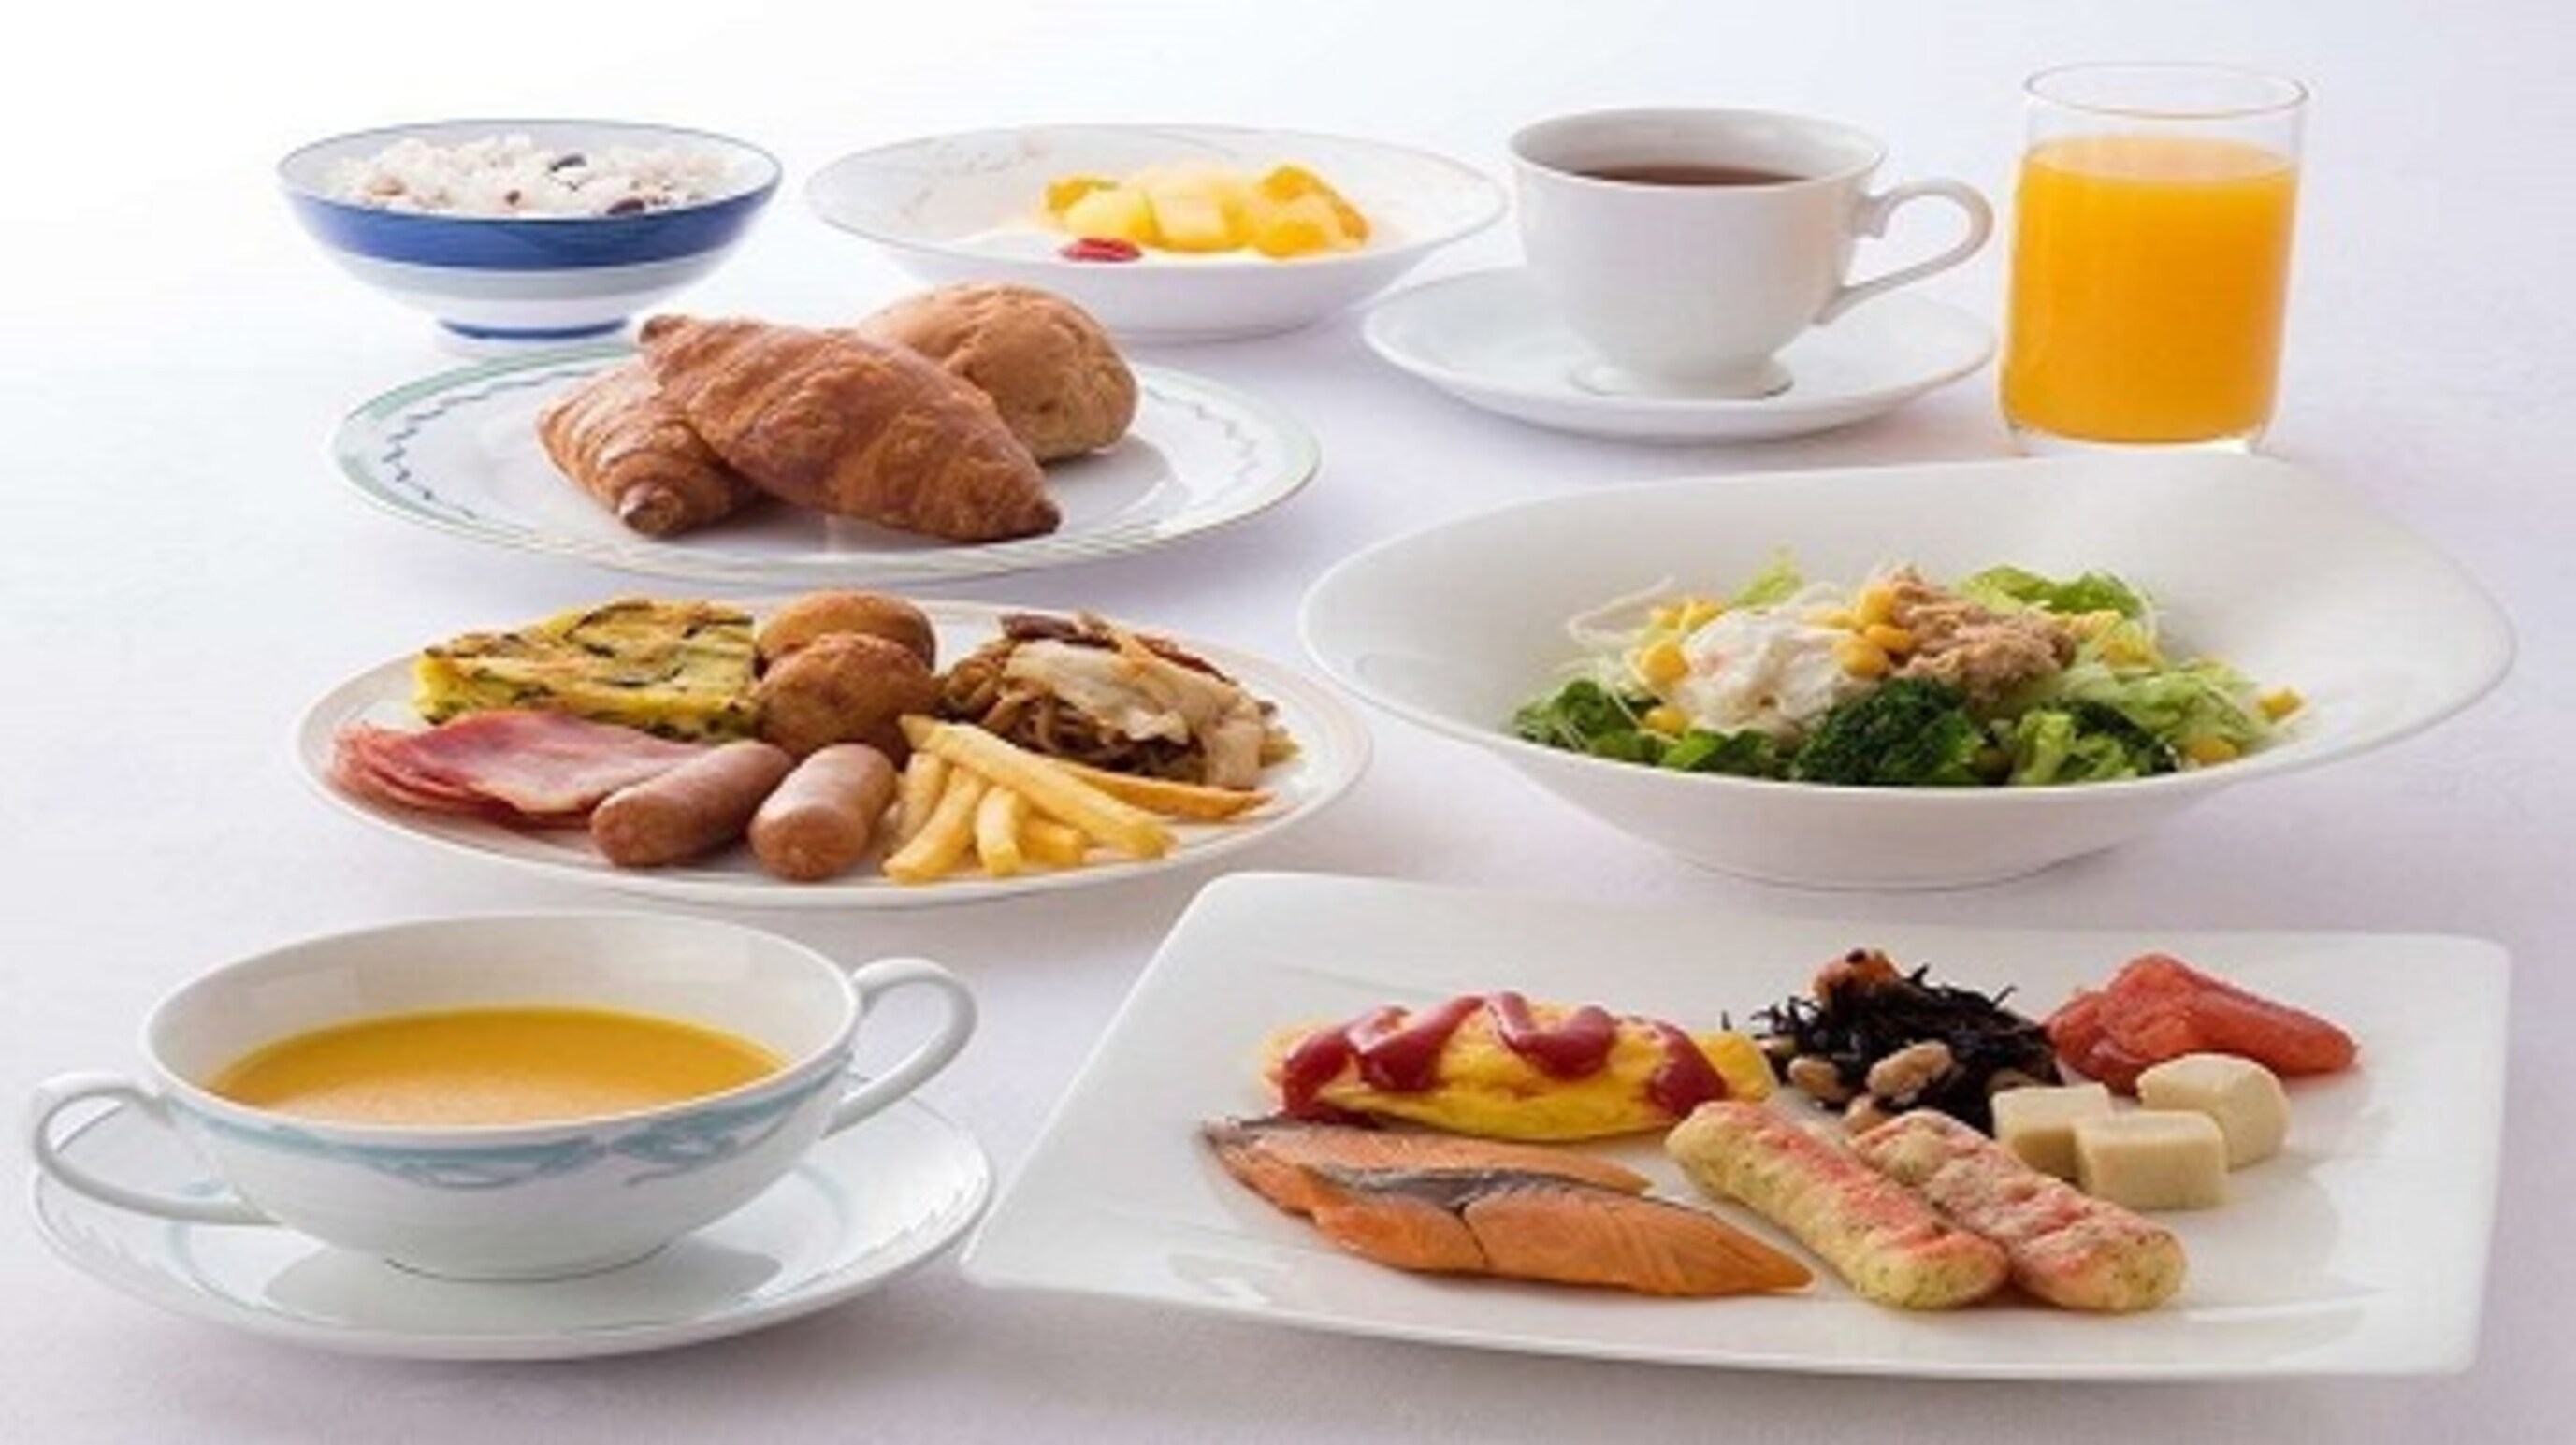 [Breakfast image] Breakfast menu example